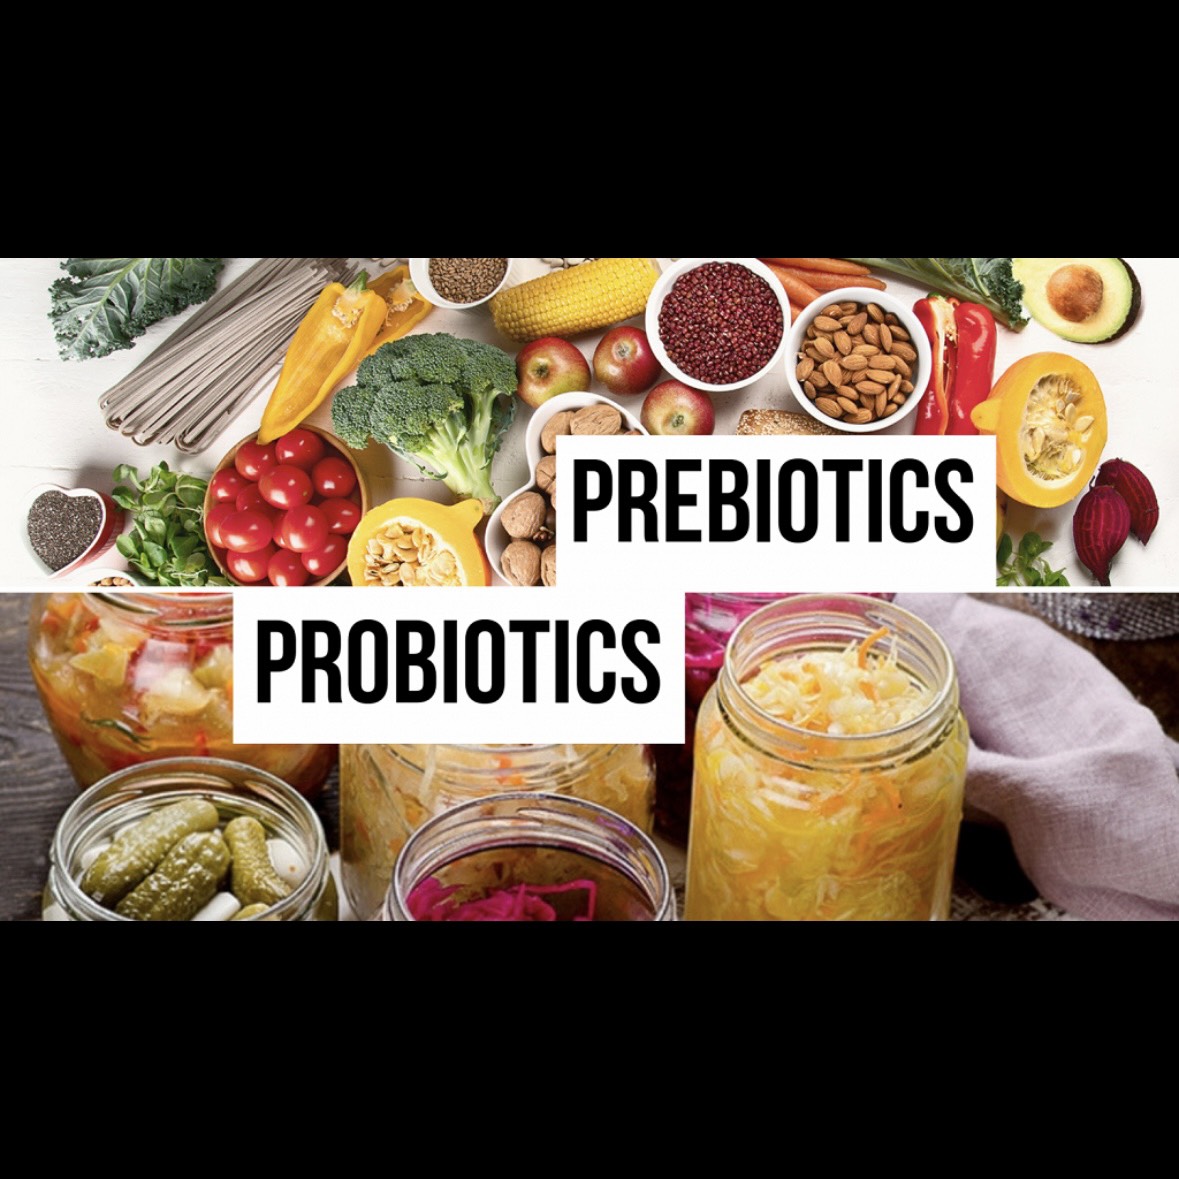 SỰ KẾT HỢP TUYỆT VỜI TRONG CHẾ PHẨM MEN VI SINH FLORA  - Probiotics và Prebiotics cùng các loại vitamin